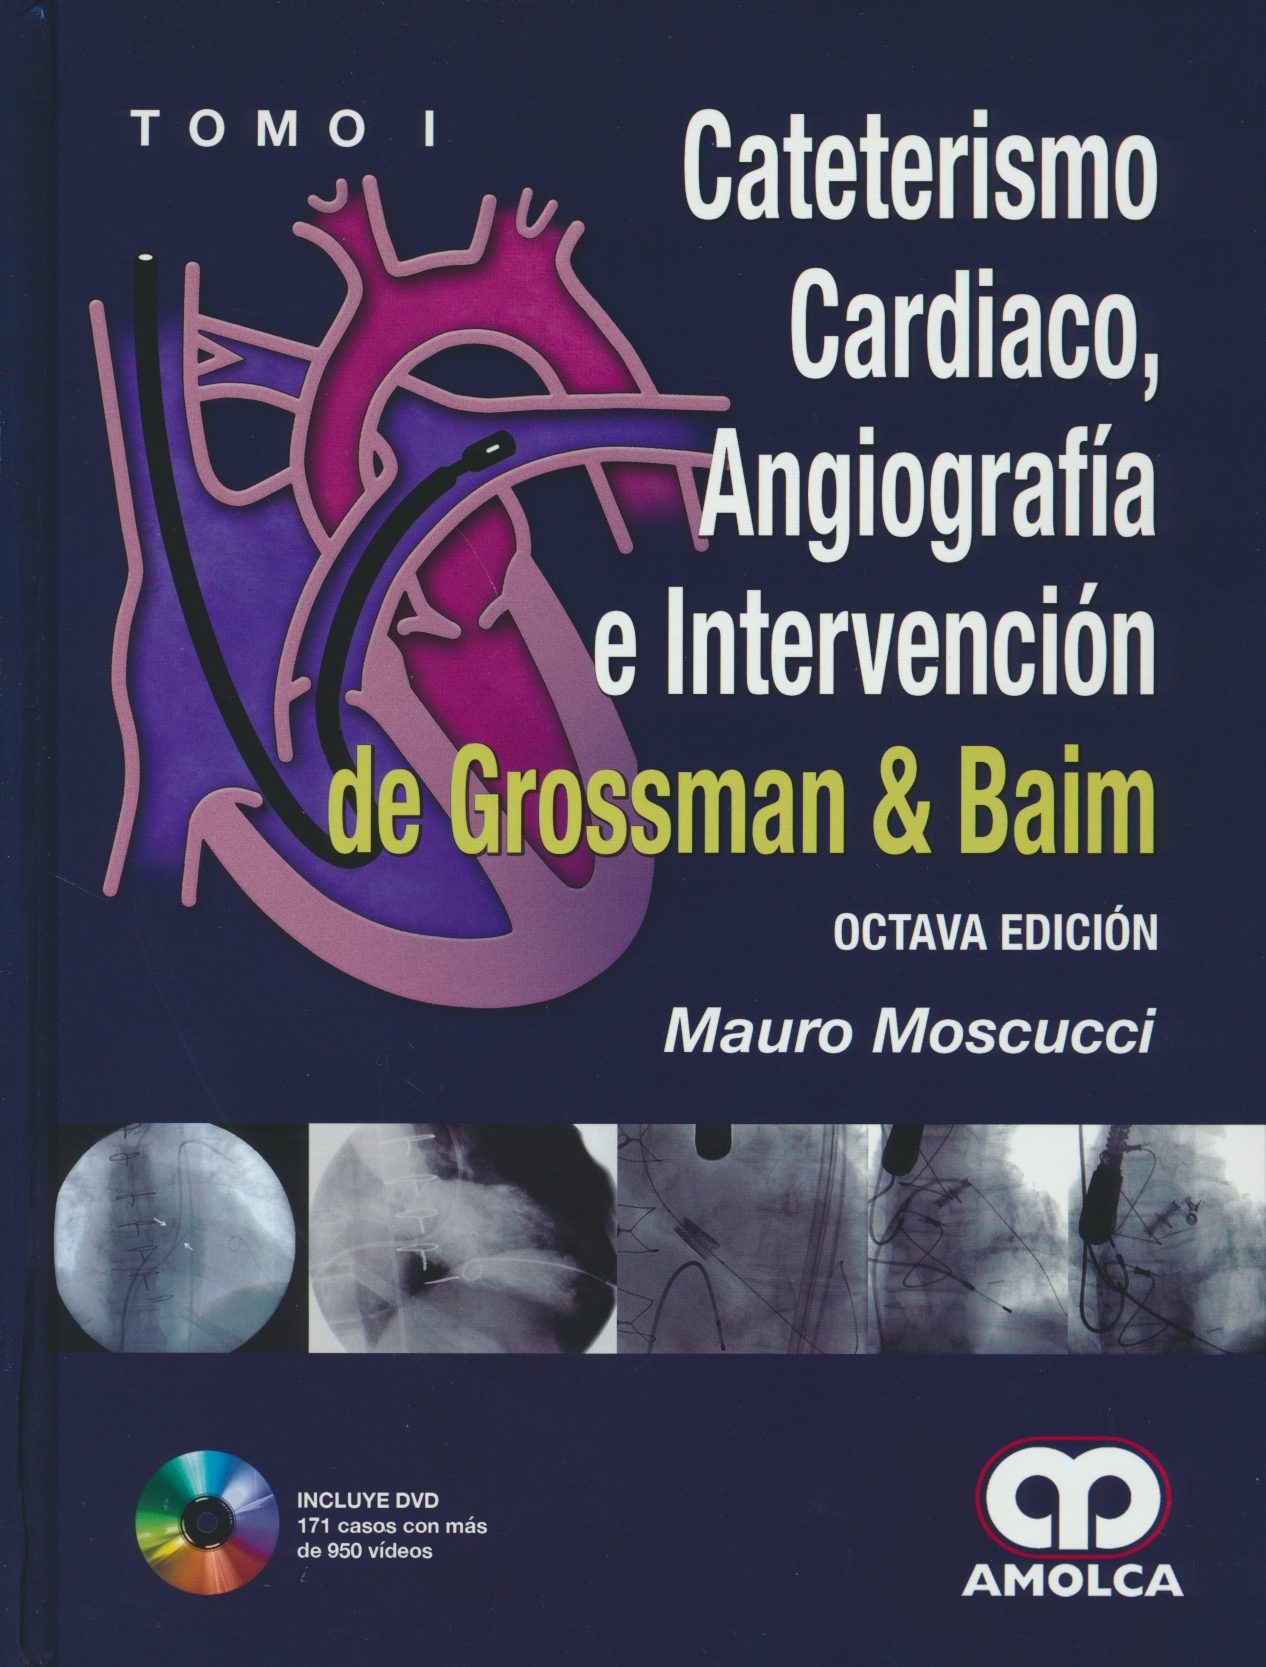 ISBN: 9789588871844 CATETERISMO CARDIACO, ANGIOGRAFÍA E INTERVENCIÓN DE GROSSMAN Y BAIM, 2 VOLS. + DVD